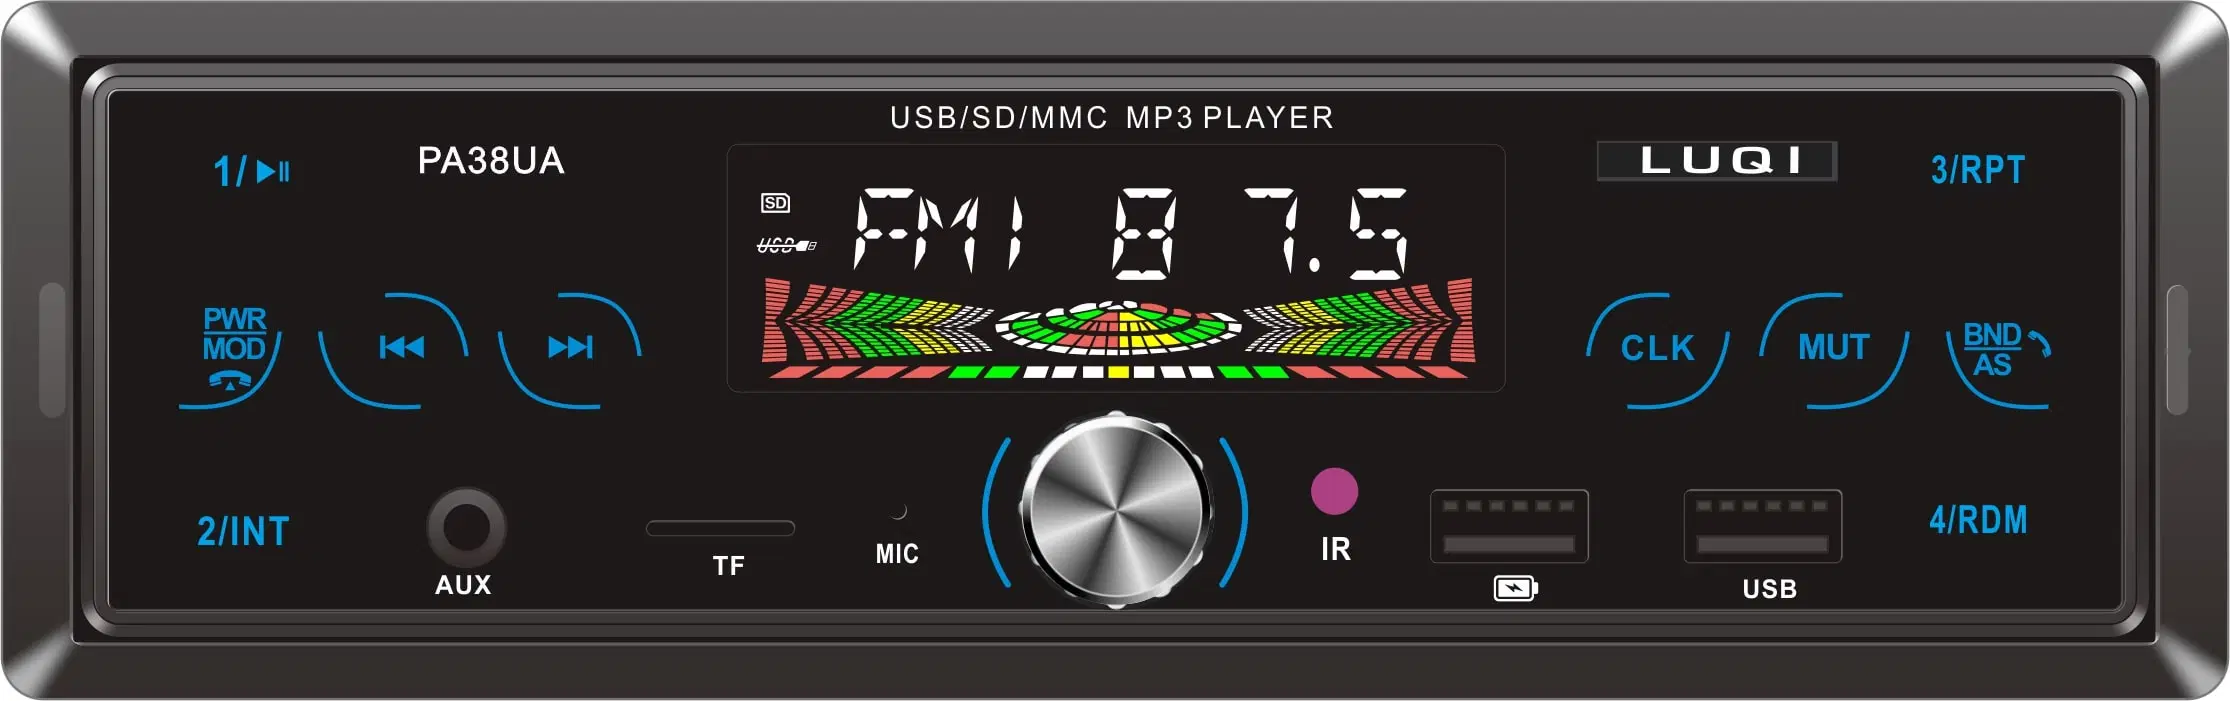 Modèle privé toucher le bouton Double voiture USB MP3 Audio